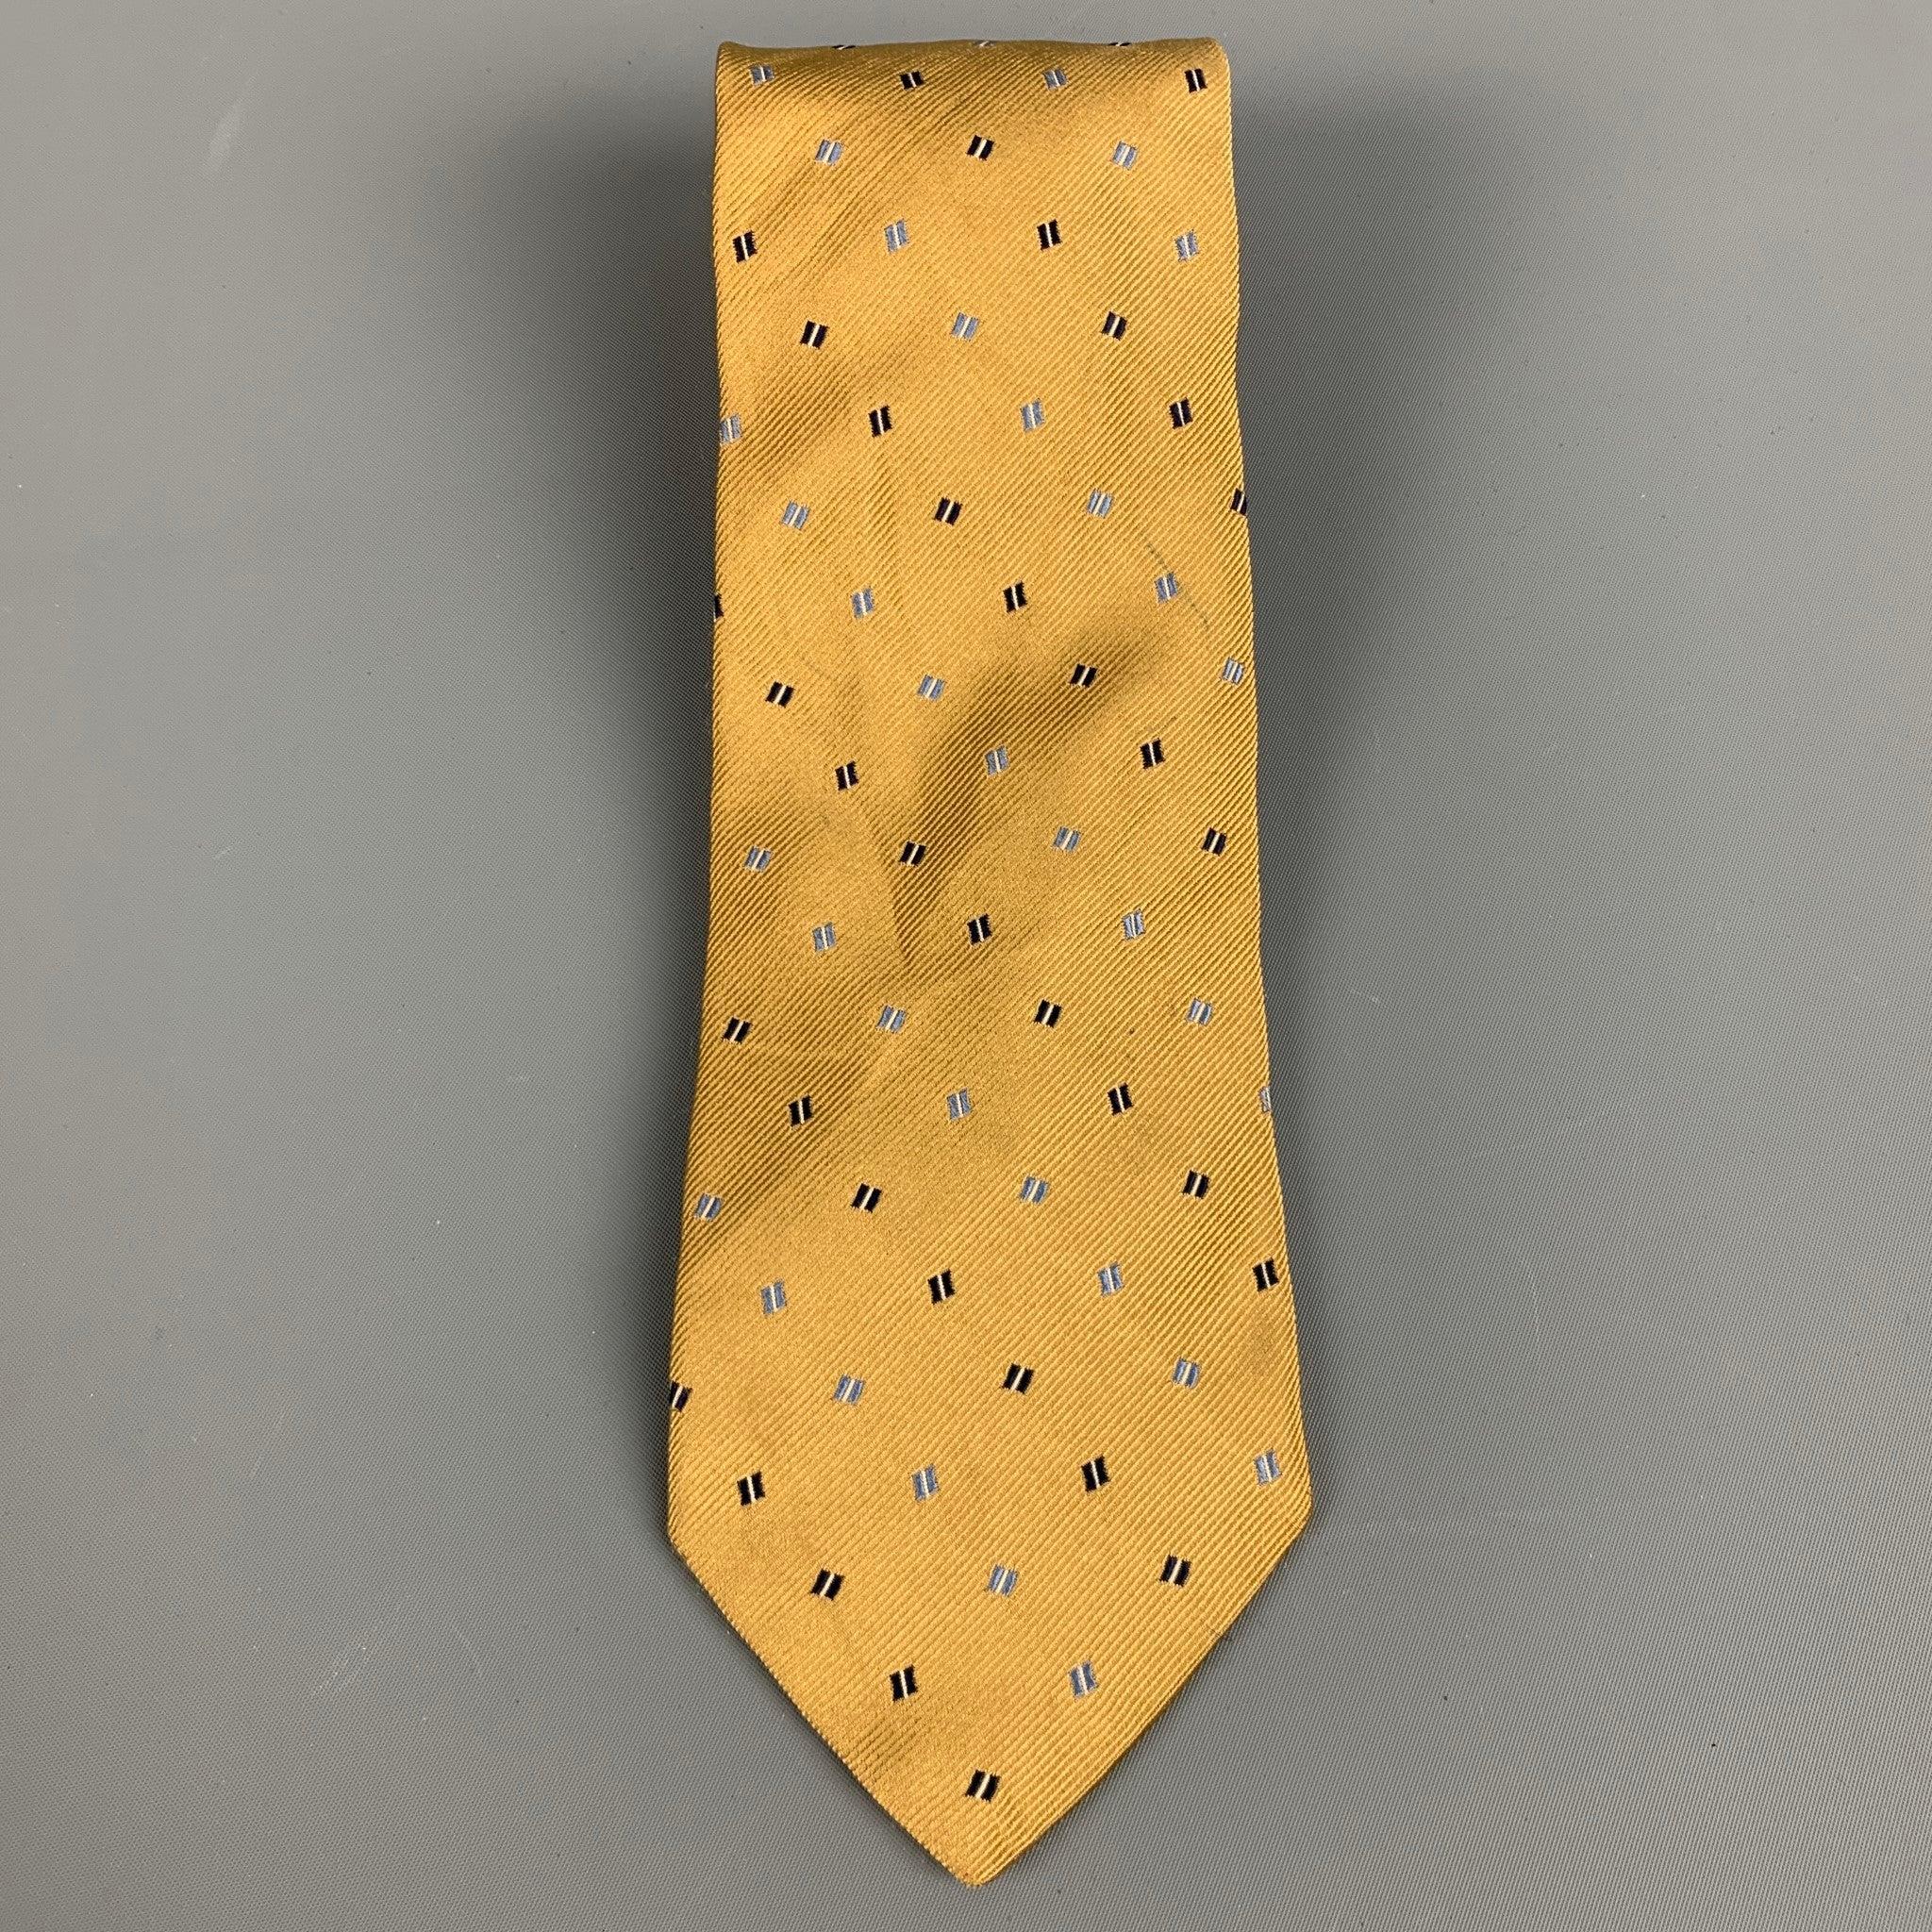 ERMENEGILDO ZEGNA
Krawatte aus goldfarbenem Seidenstoff mit marineblauem und blauem Karomuster. Made in Italy. sehr guter gebrauchter Zustand. Geringfügiges Zeichen. 

Abmessungen: 
  Breite: 3,5 Zoll Länge: 60 Zoll 
  
  
Referenz: